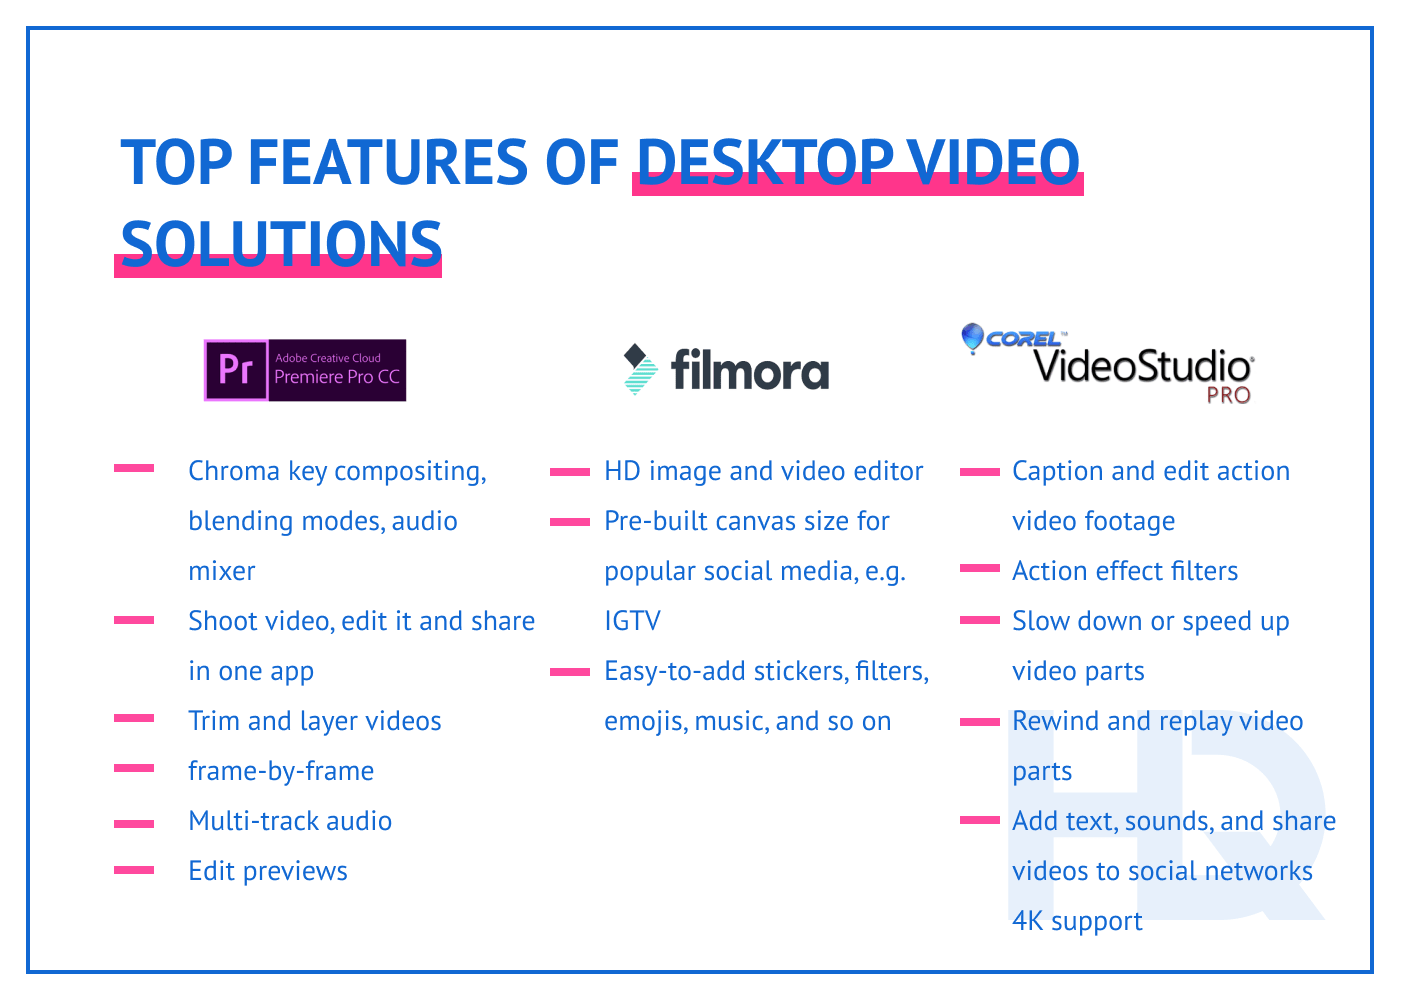 Features of desktop video solutions.